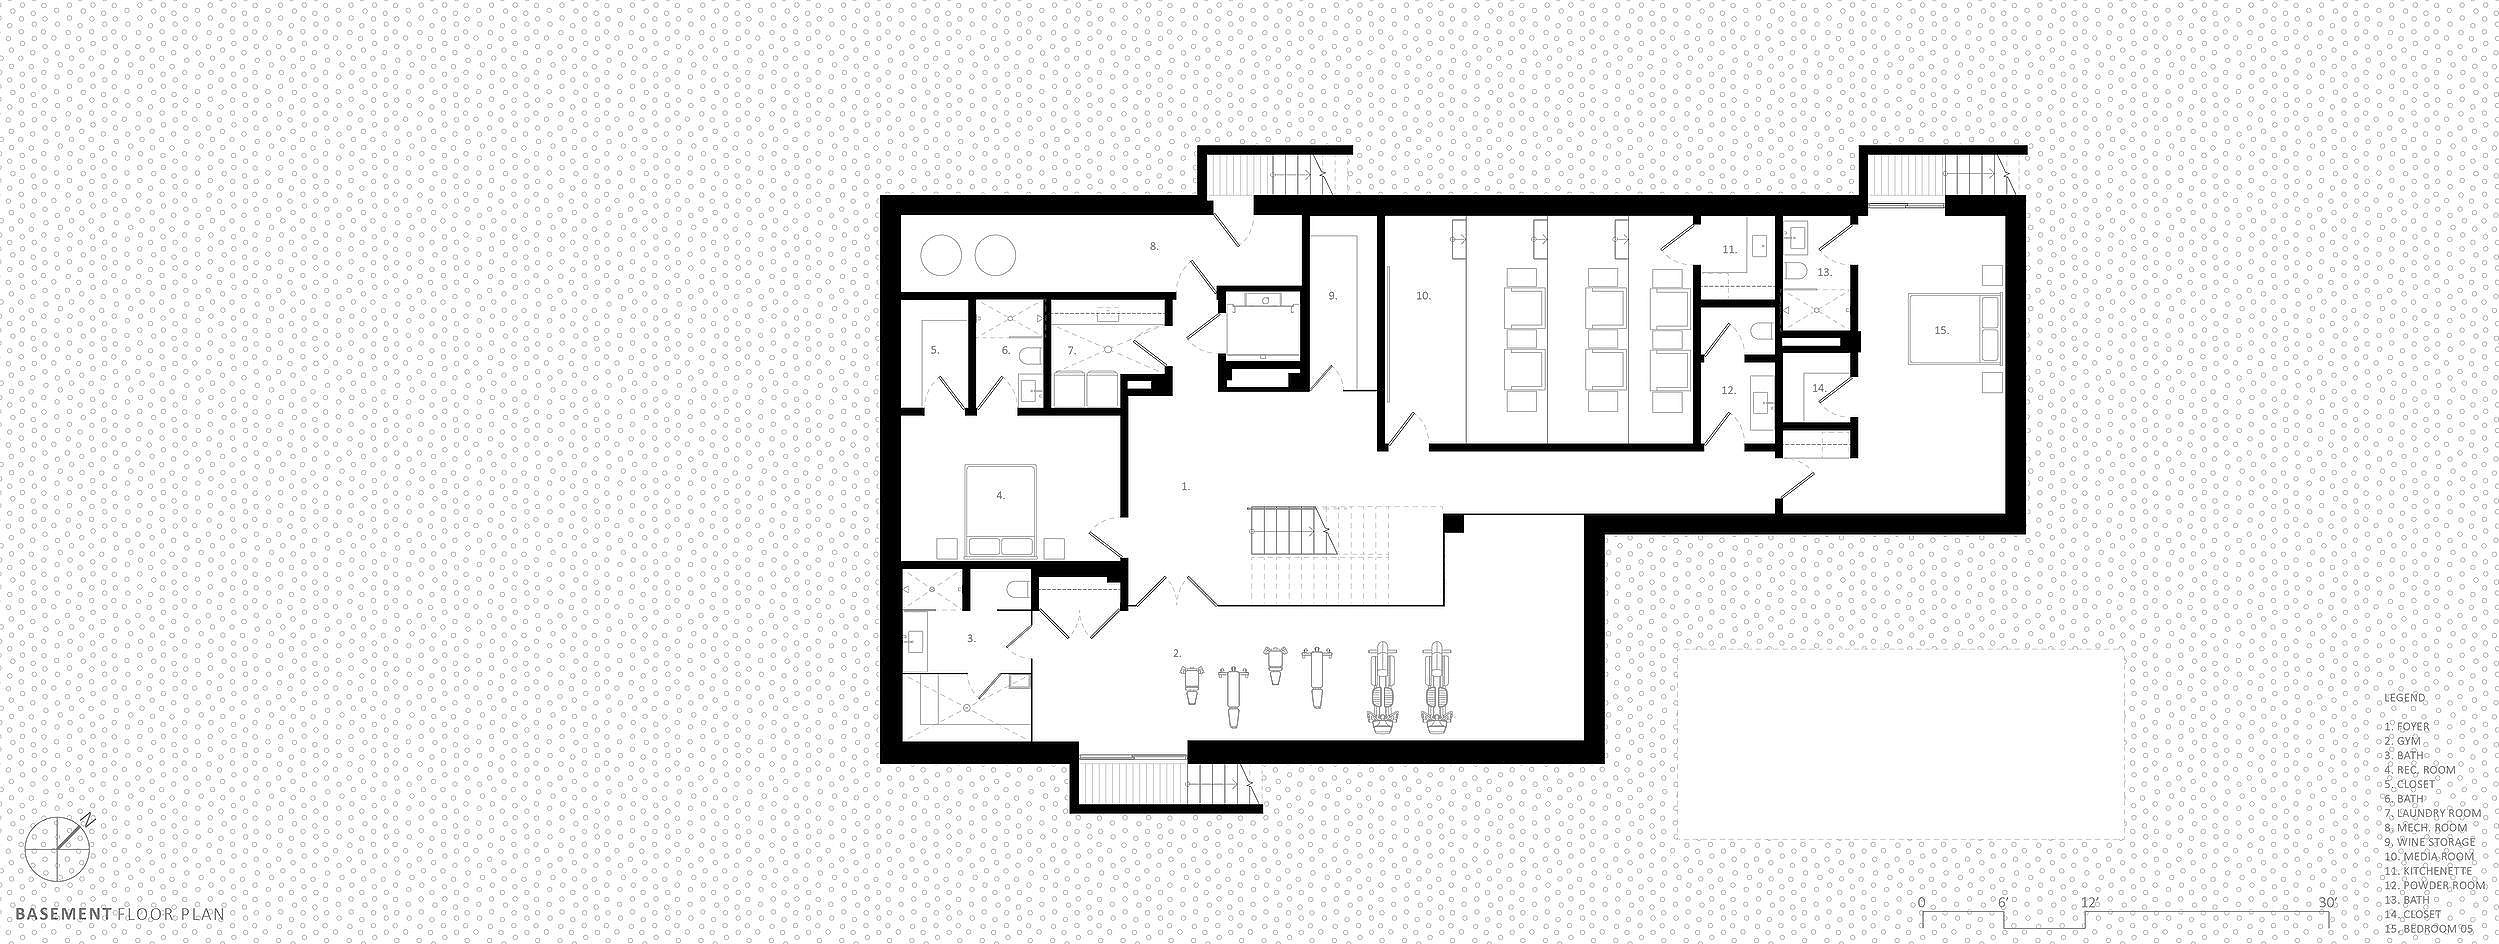 bspk-design-architecture-california-7700-residenital-fin-house-basement+floor+plan.jpg